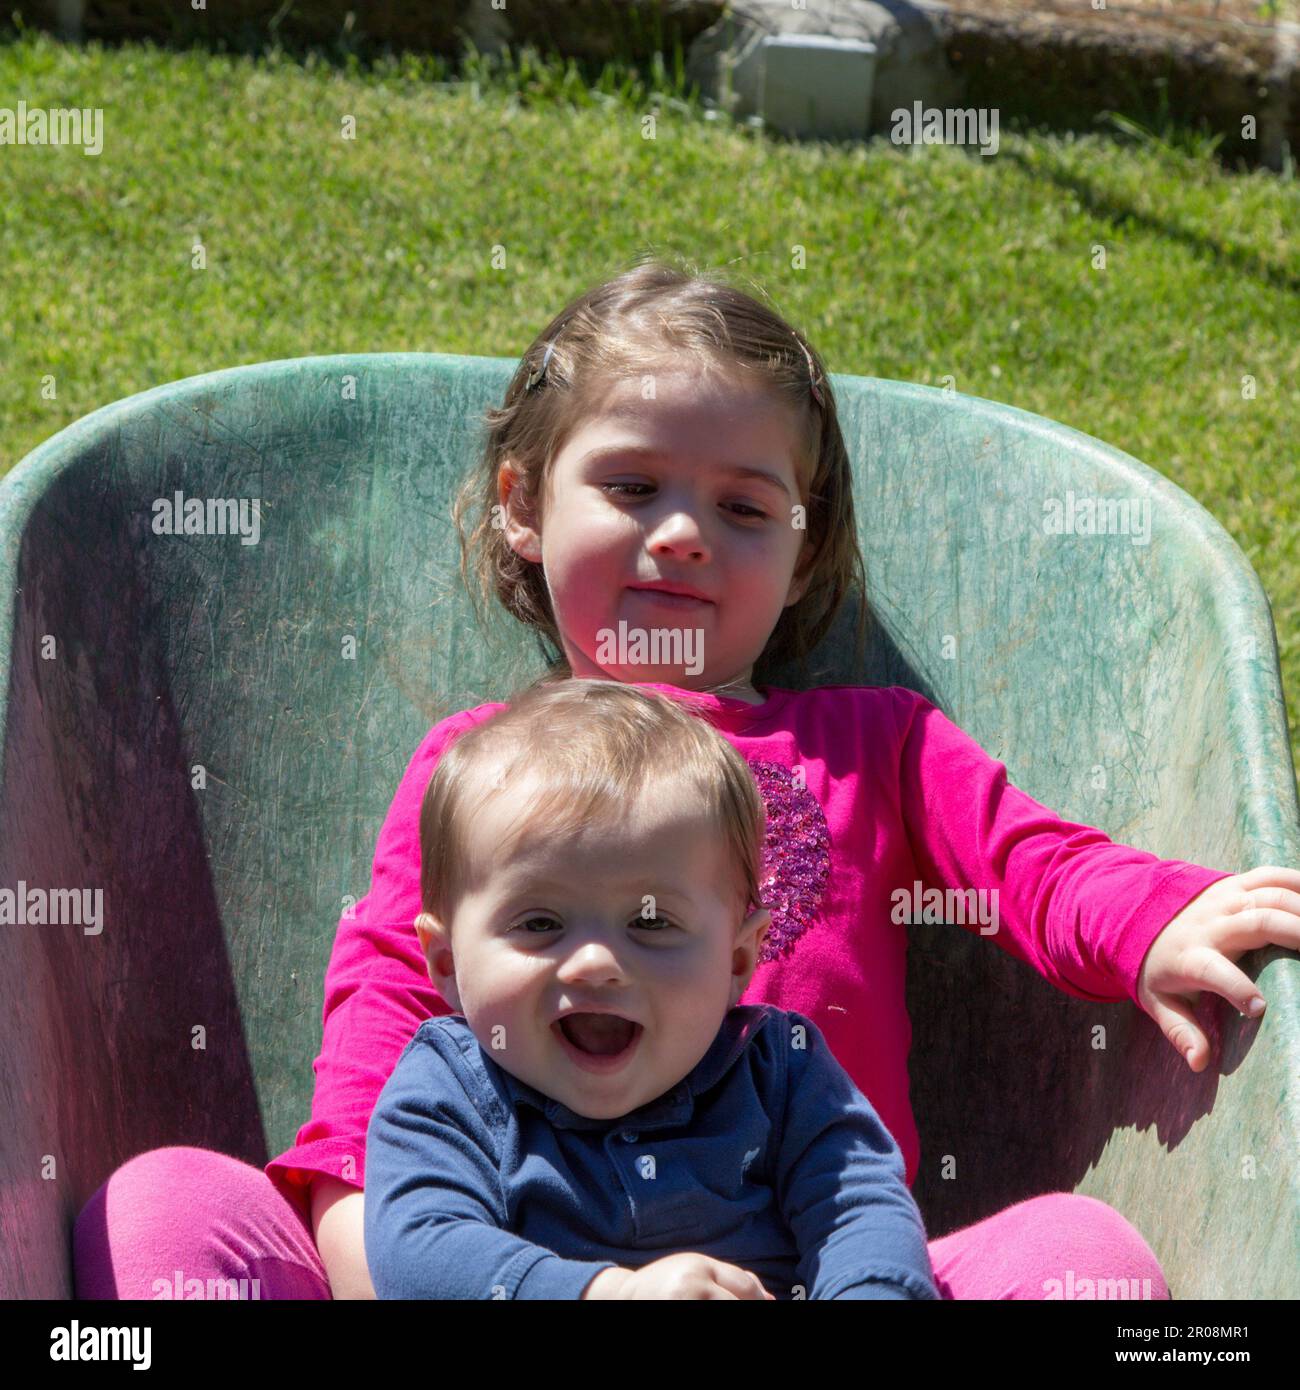 Image de deux adorables enfants souriants se tenant à l'intérieur d'une brouette. Amour fraternel comme ils jouent dans le jardin Banque D'Images